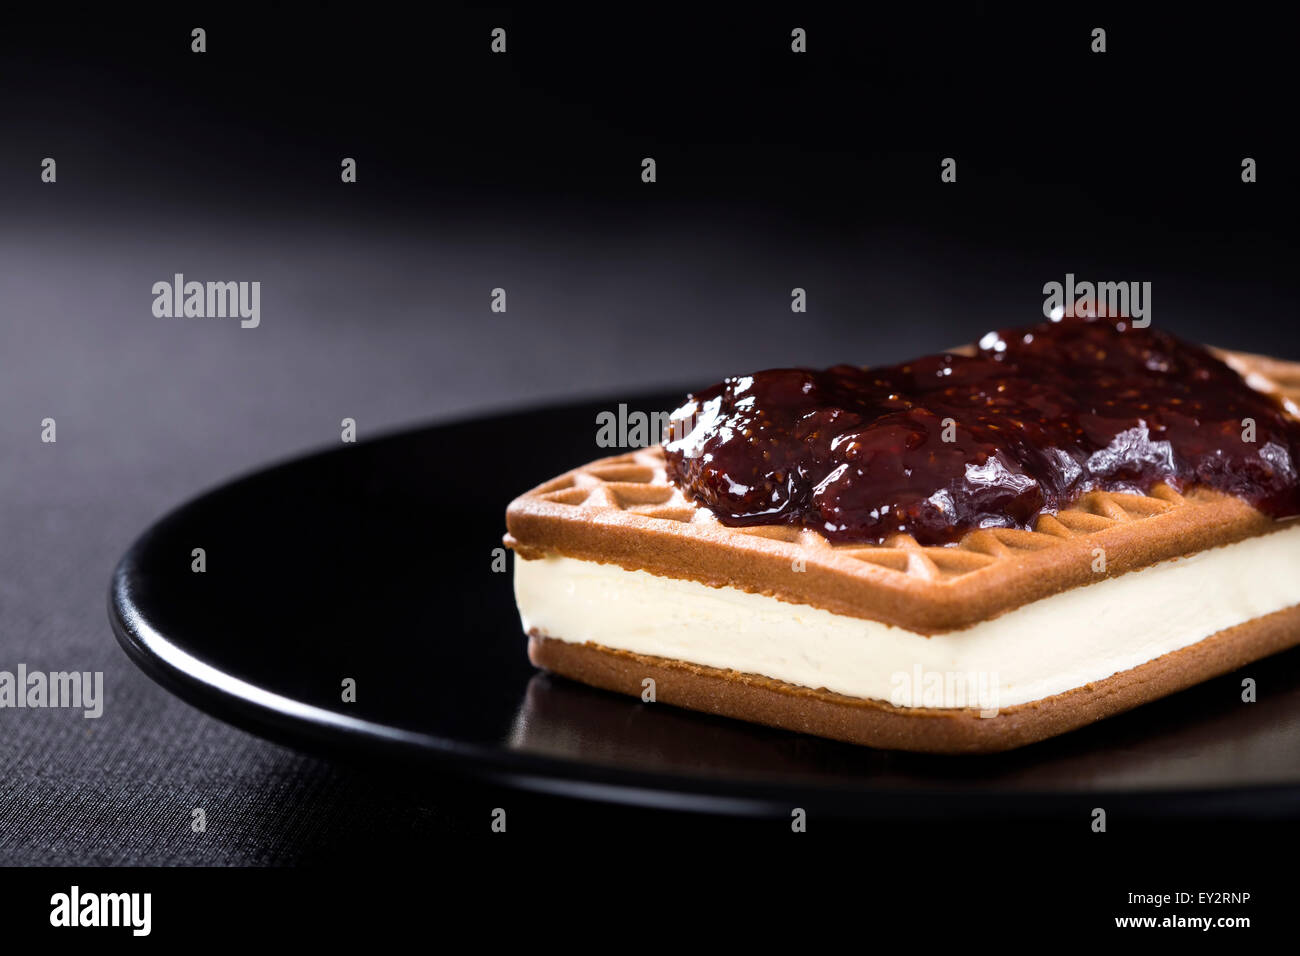 Ice Cream Sandwich mit Strawberry jam auf einer dunklen Platte Stockfoto